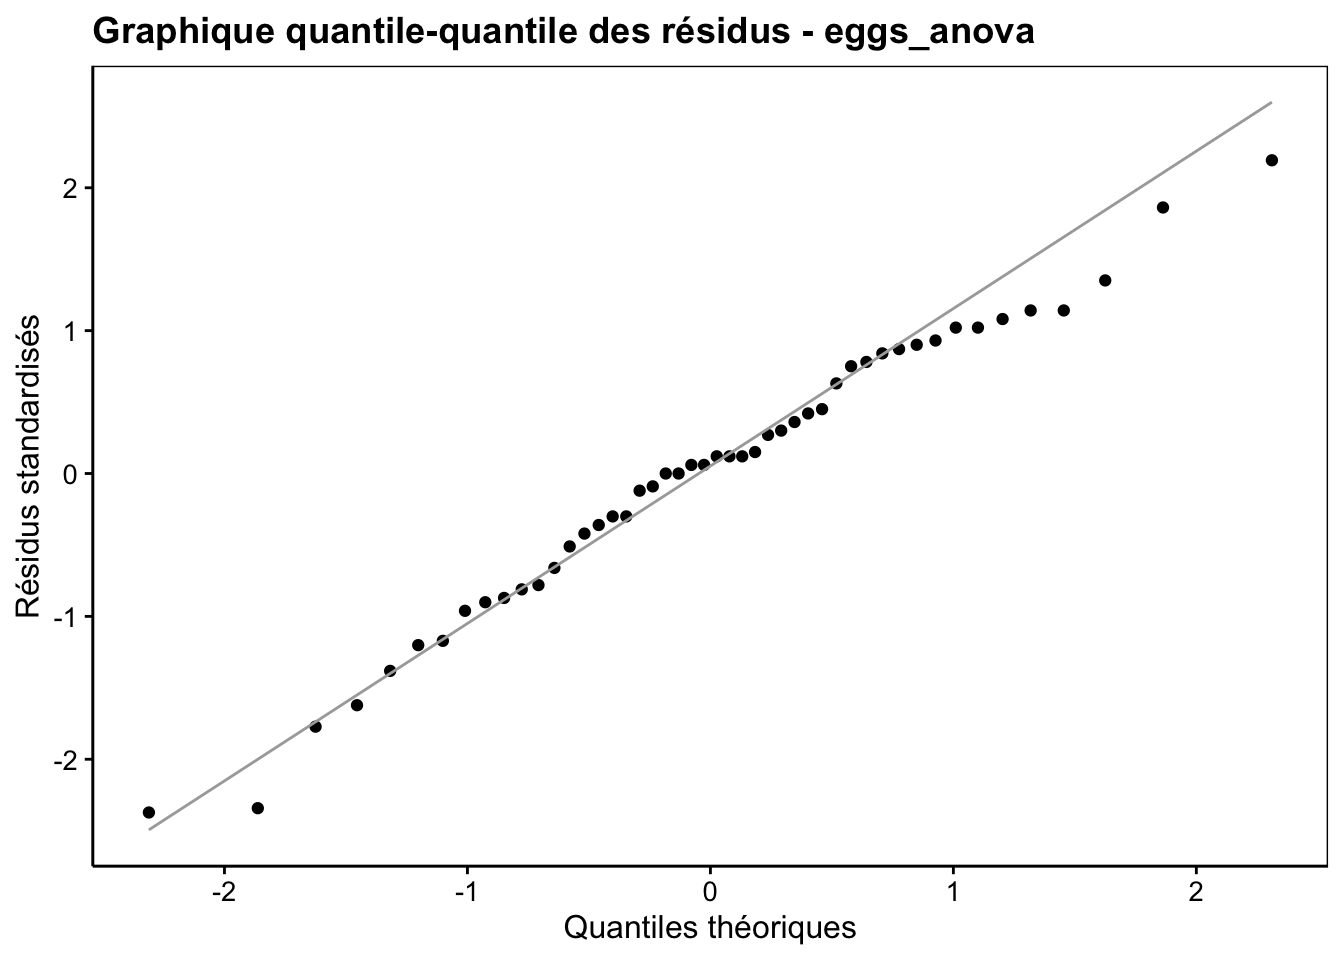 Graphique quantile-quantile des résidus de l'ANOVA à deux facteurs hiérarchisés pour la variable `Fat` du jeu de données `eggs`.